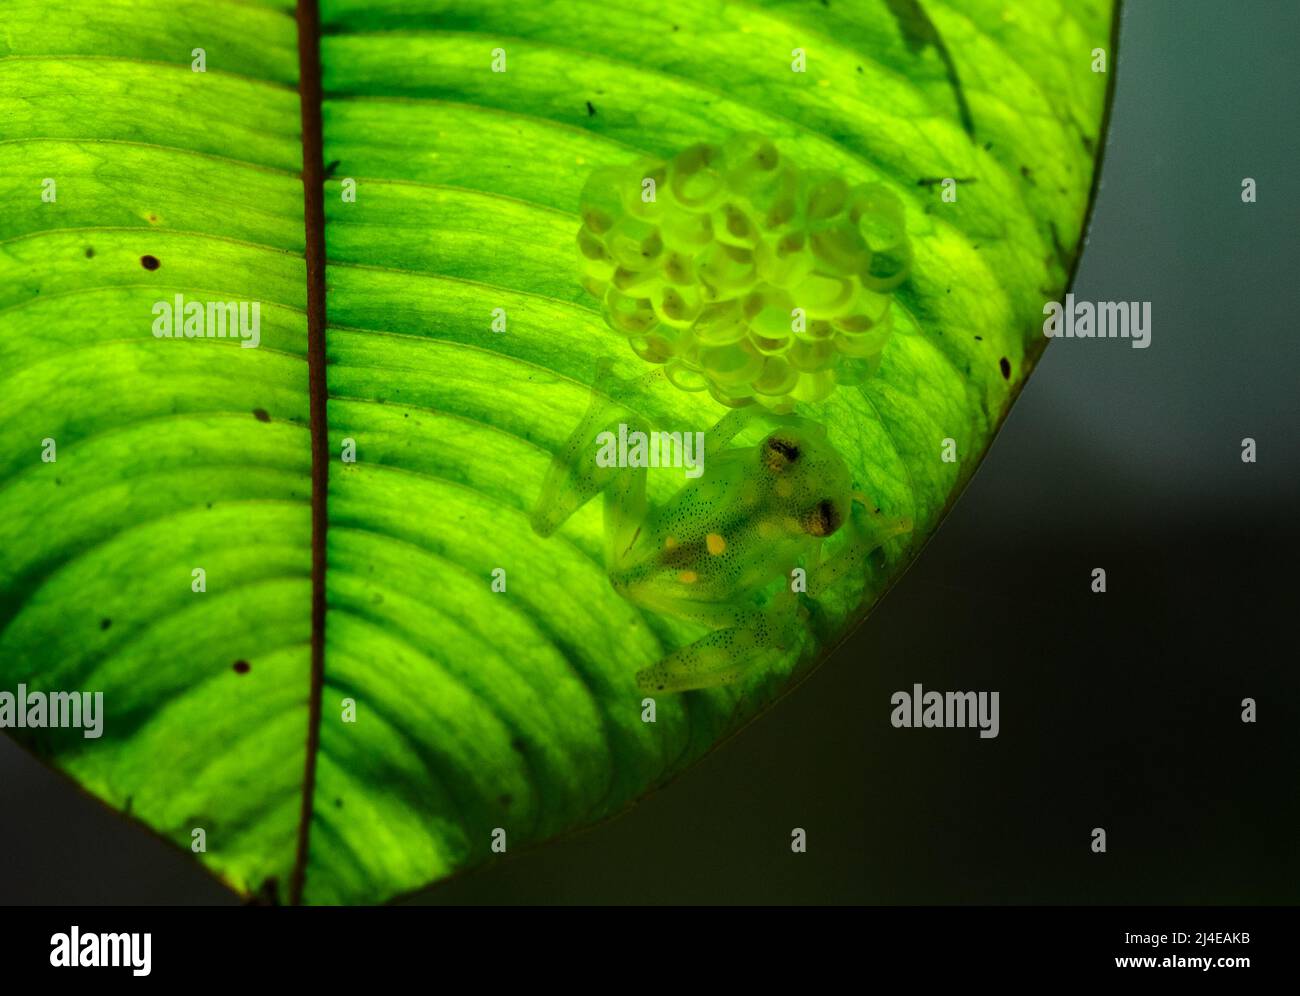 Ein retikulierter Glasfrosch oder La Palma Glasfrosch (Hyalinobatrachium valerioi), der unter einem grünen Blatt Eier in Gelegen hält. Kolumbien. Stockfoto